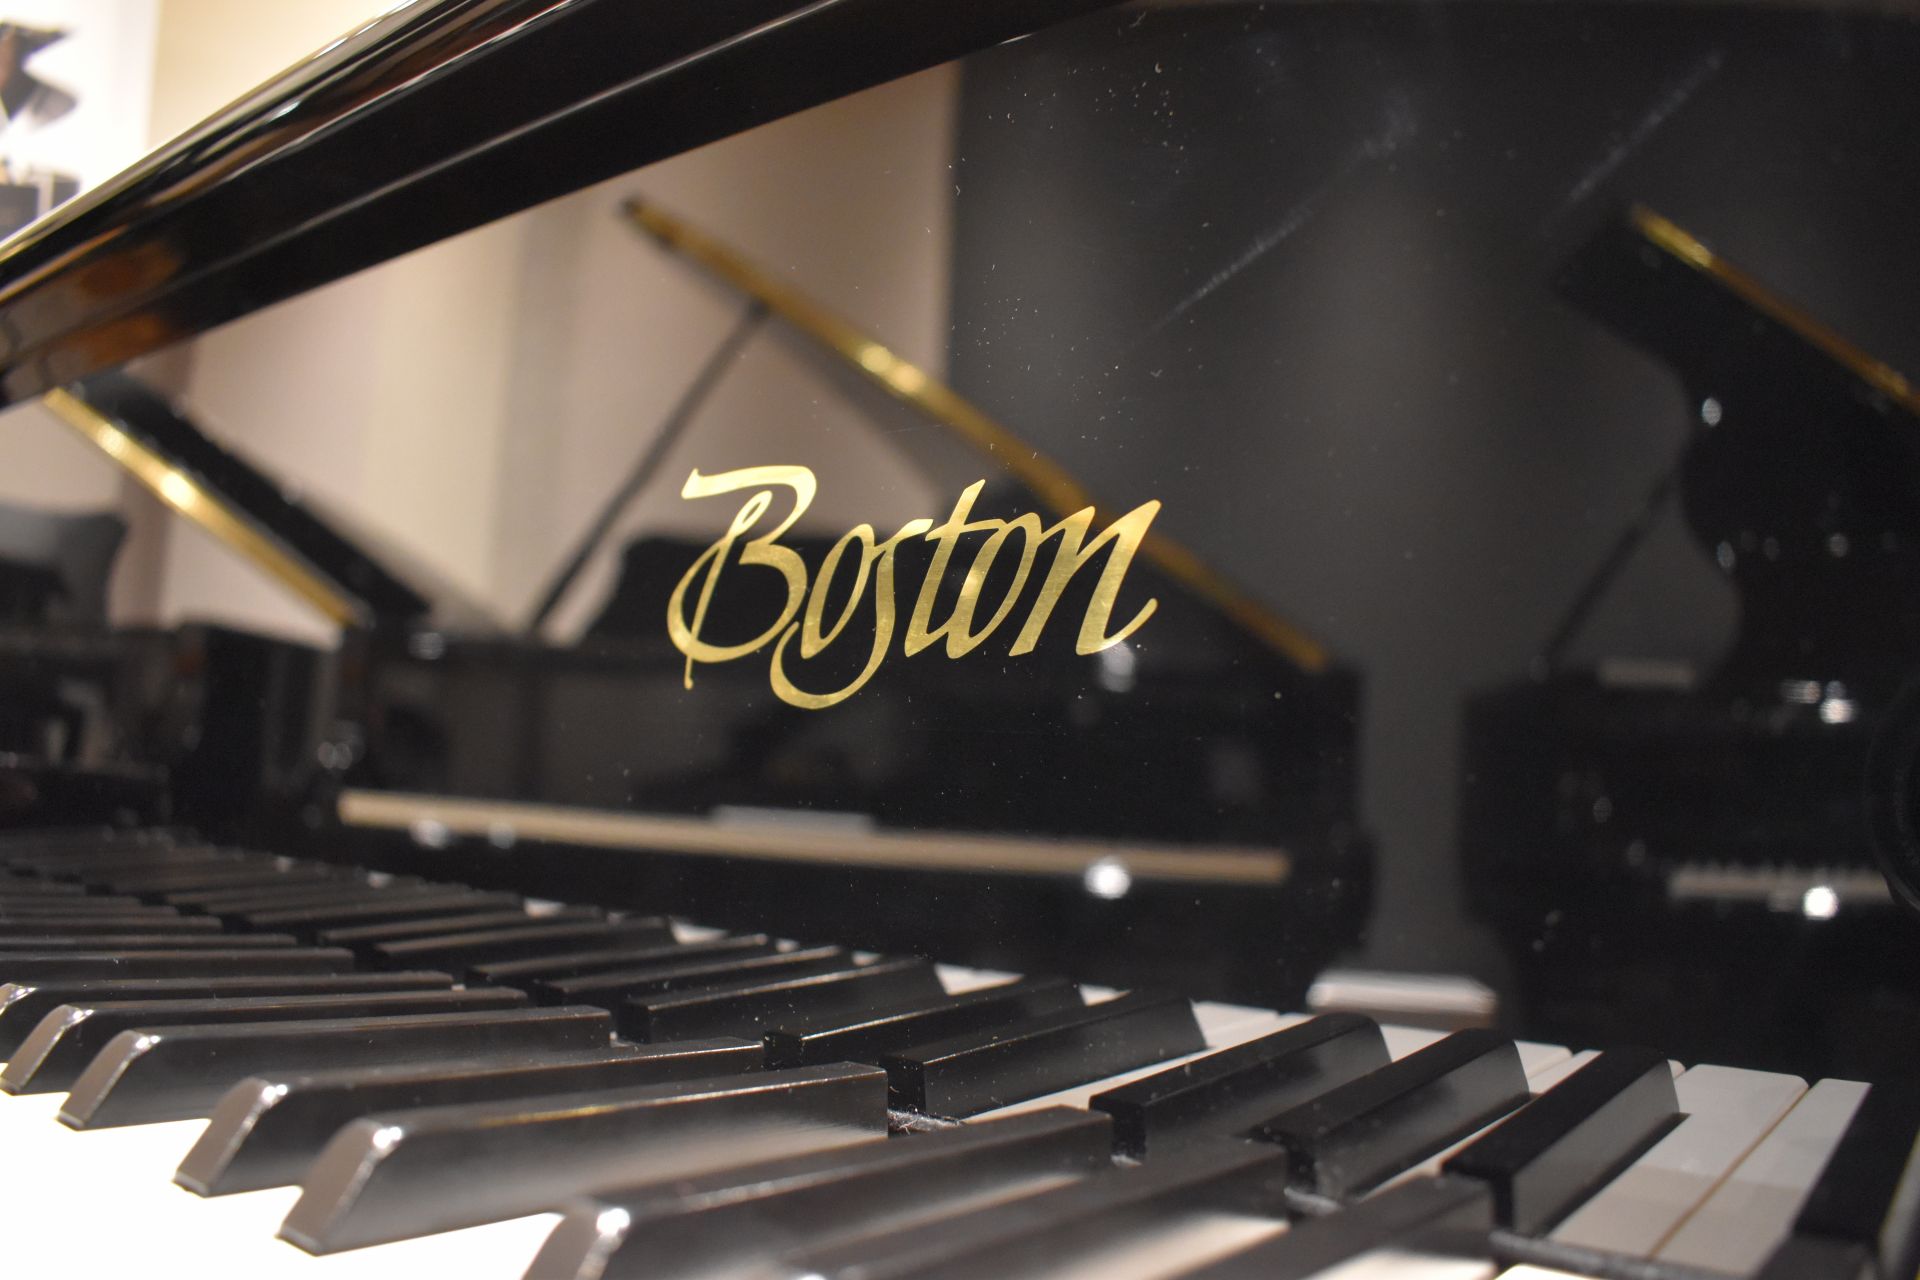 【ピアノ】スタインウェイの設計を受け継ぐピアノ”Boston”